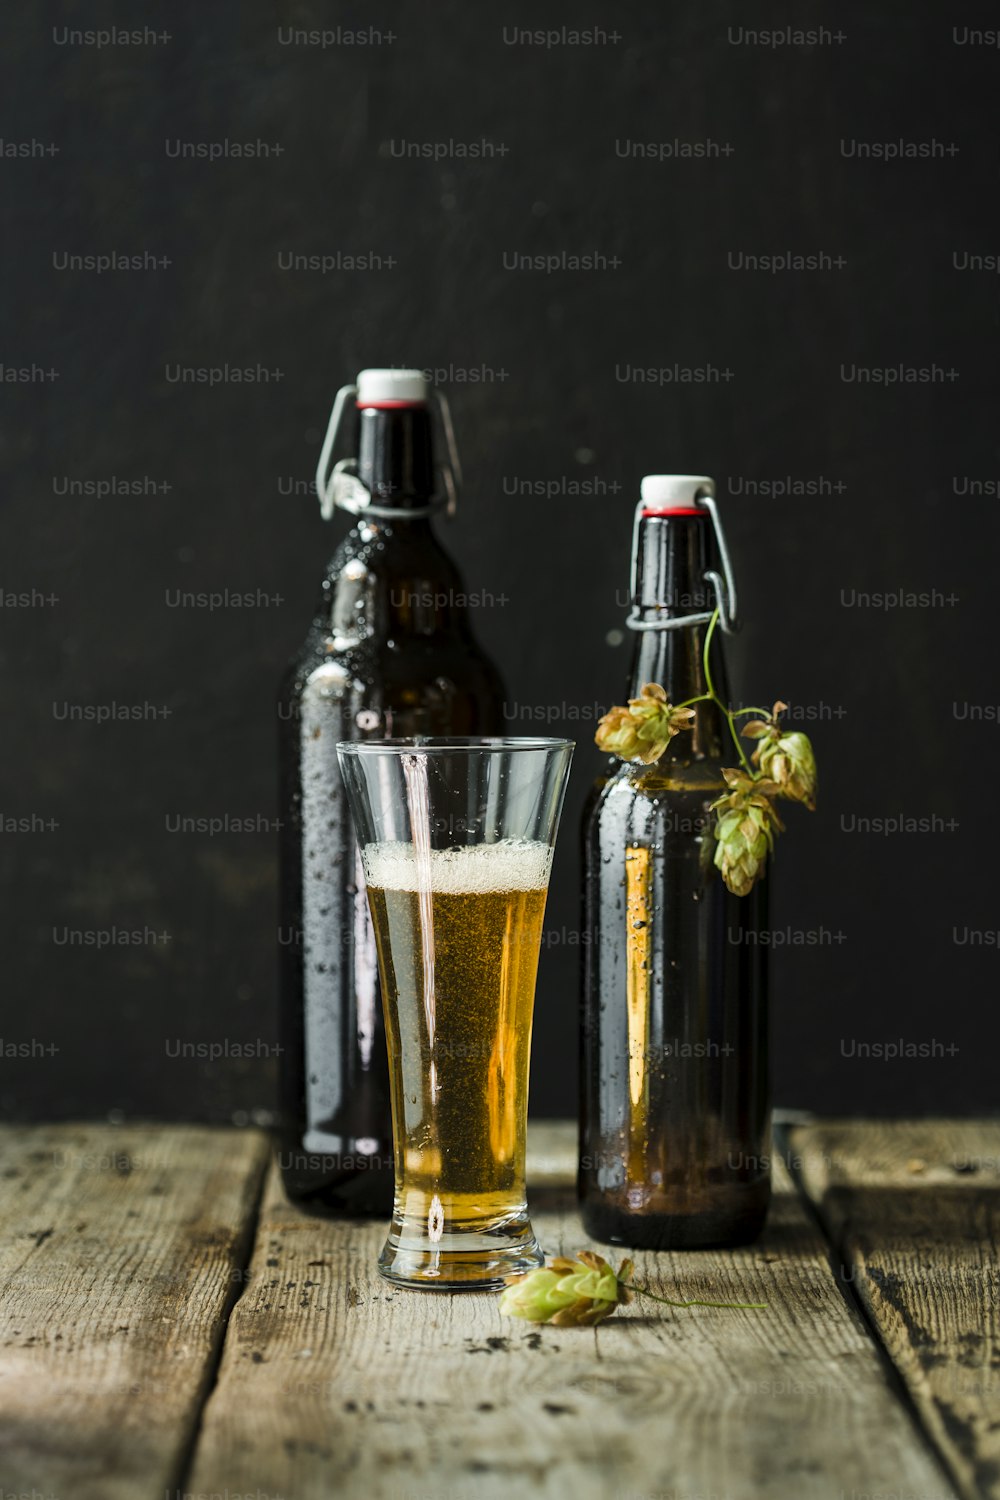 Un vaso de cerveza junto a una botella de cerveza